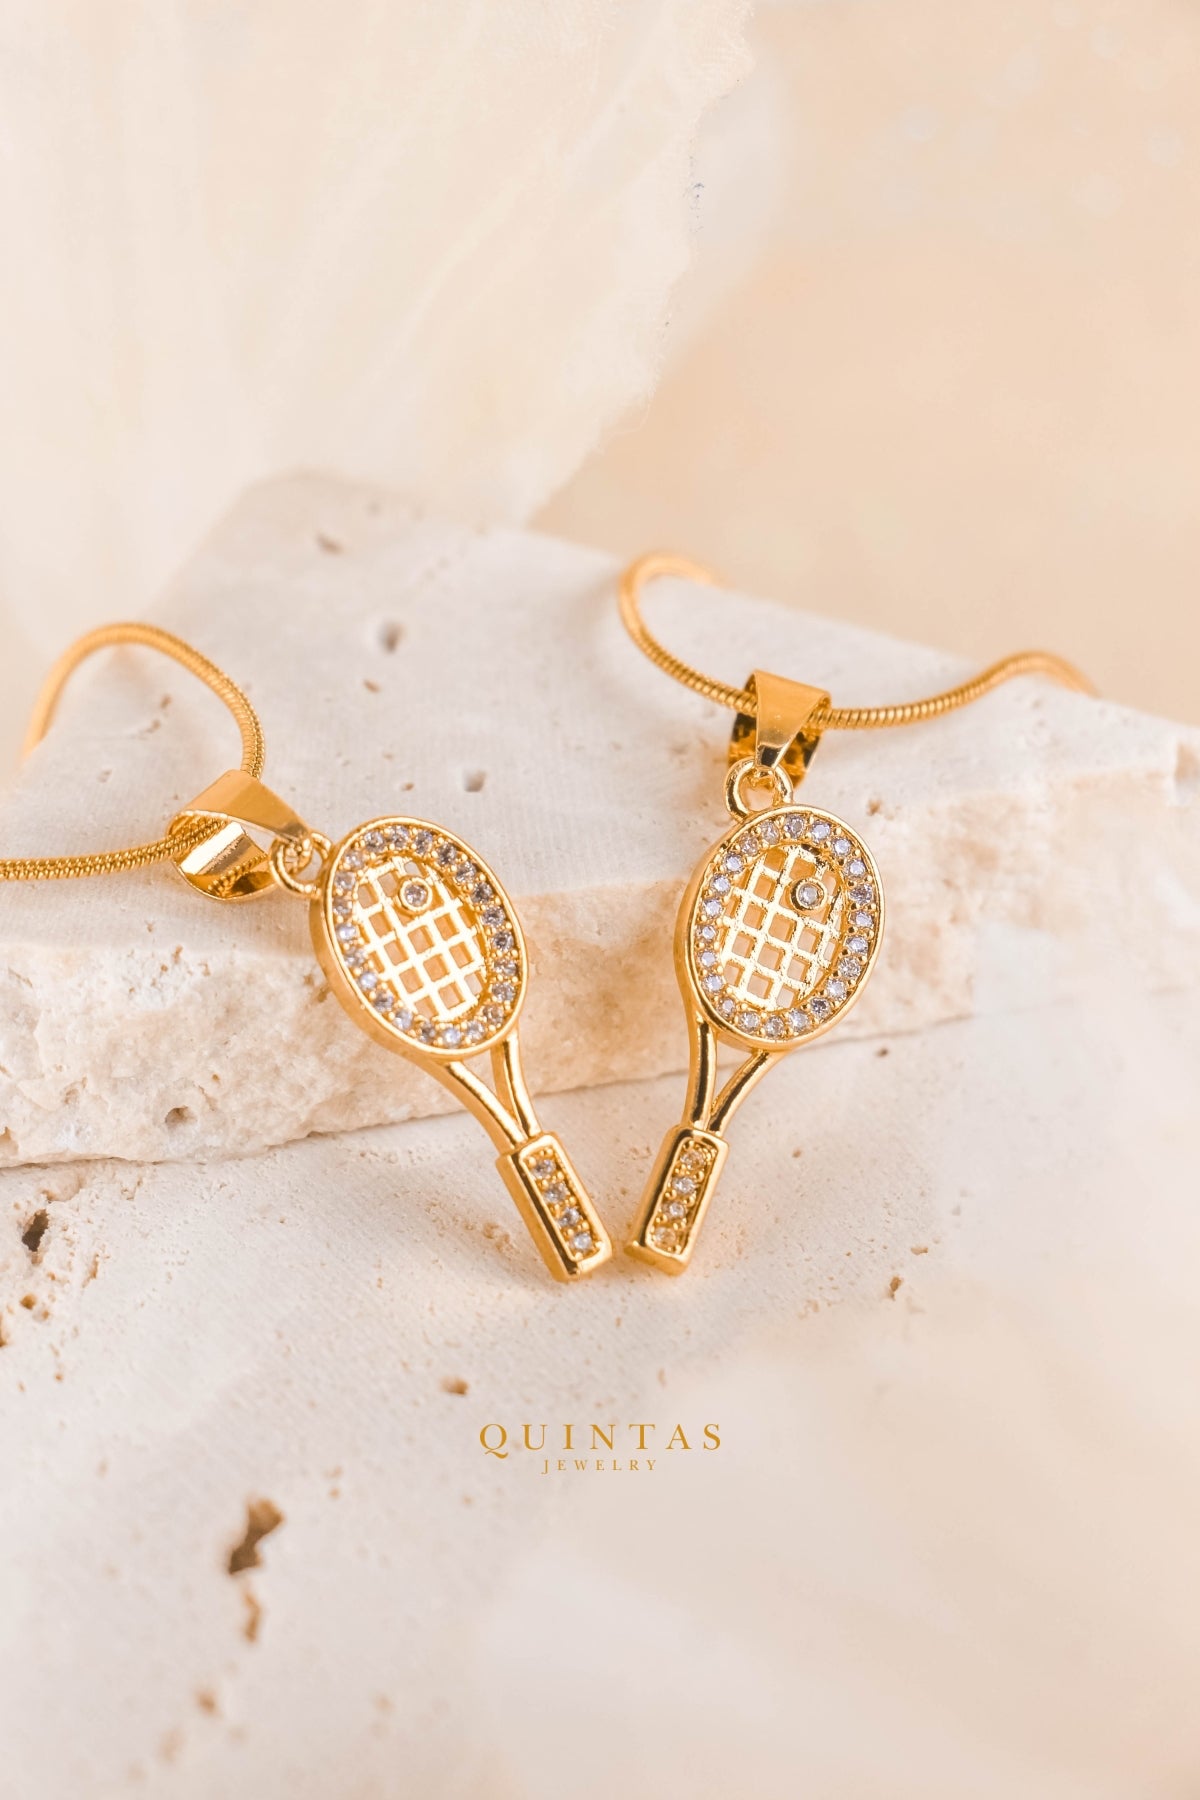 Golden Tennis Racket Necklace